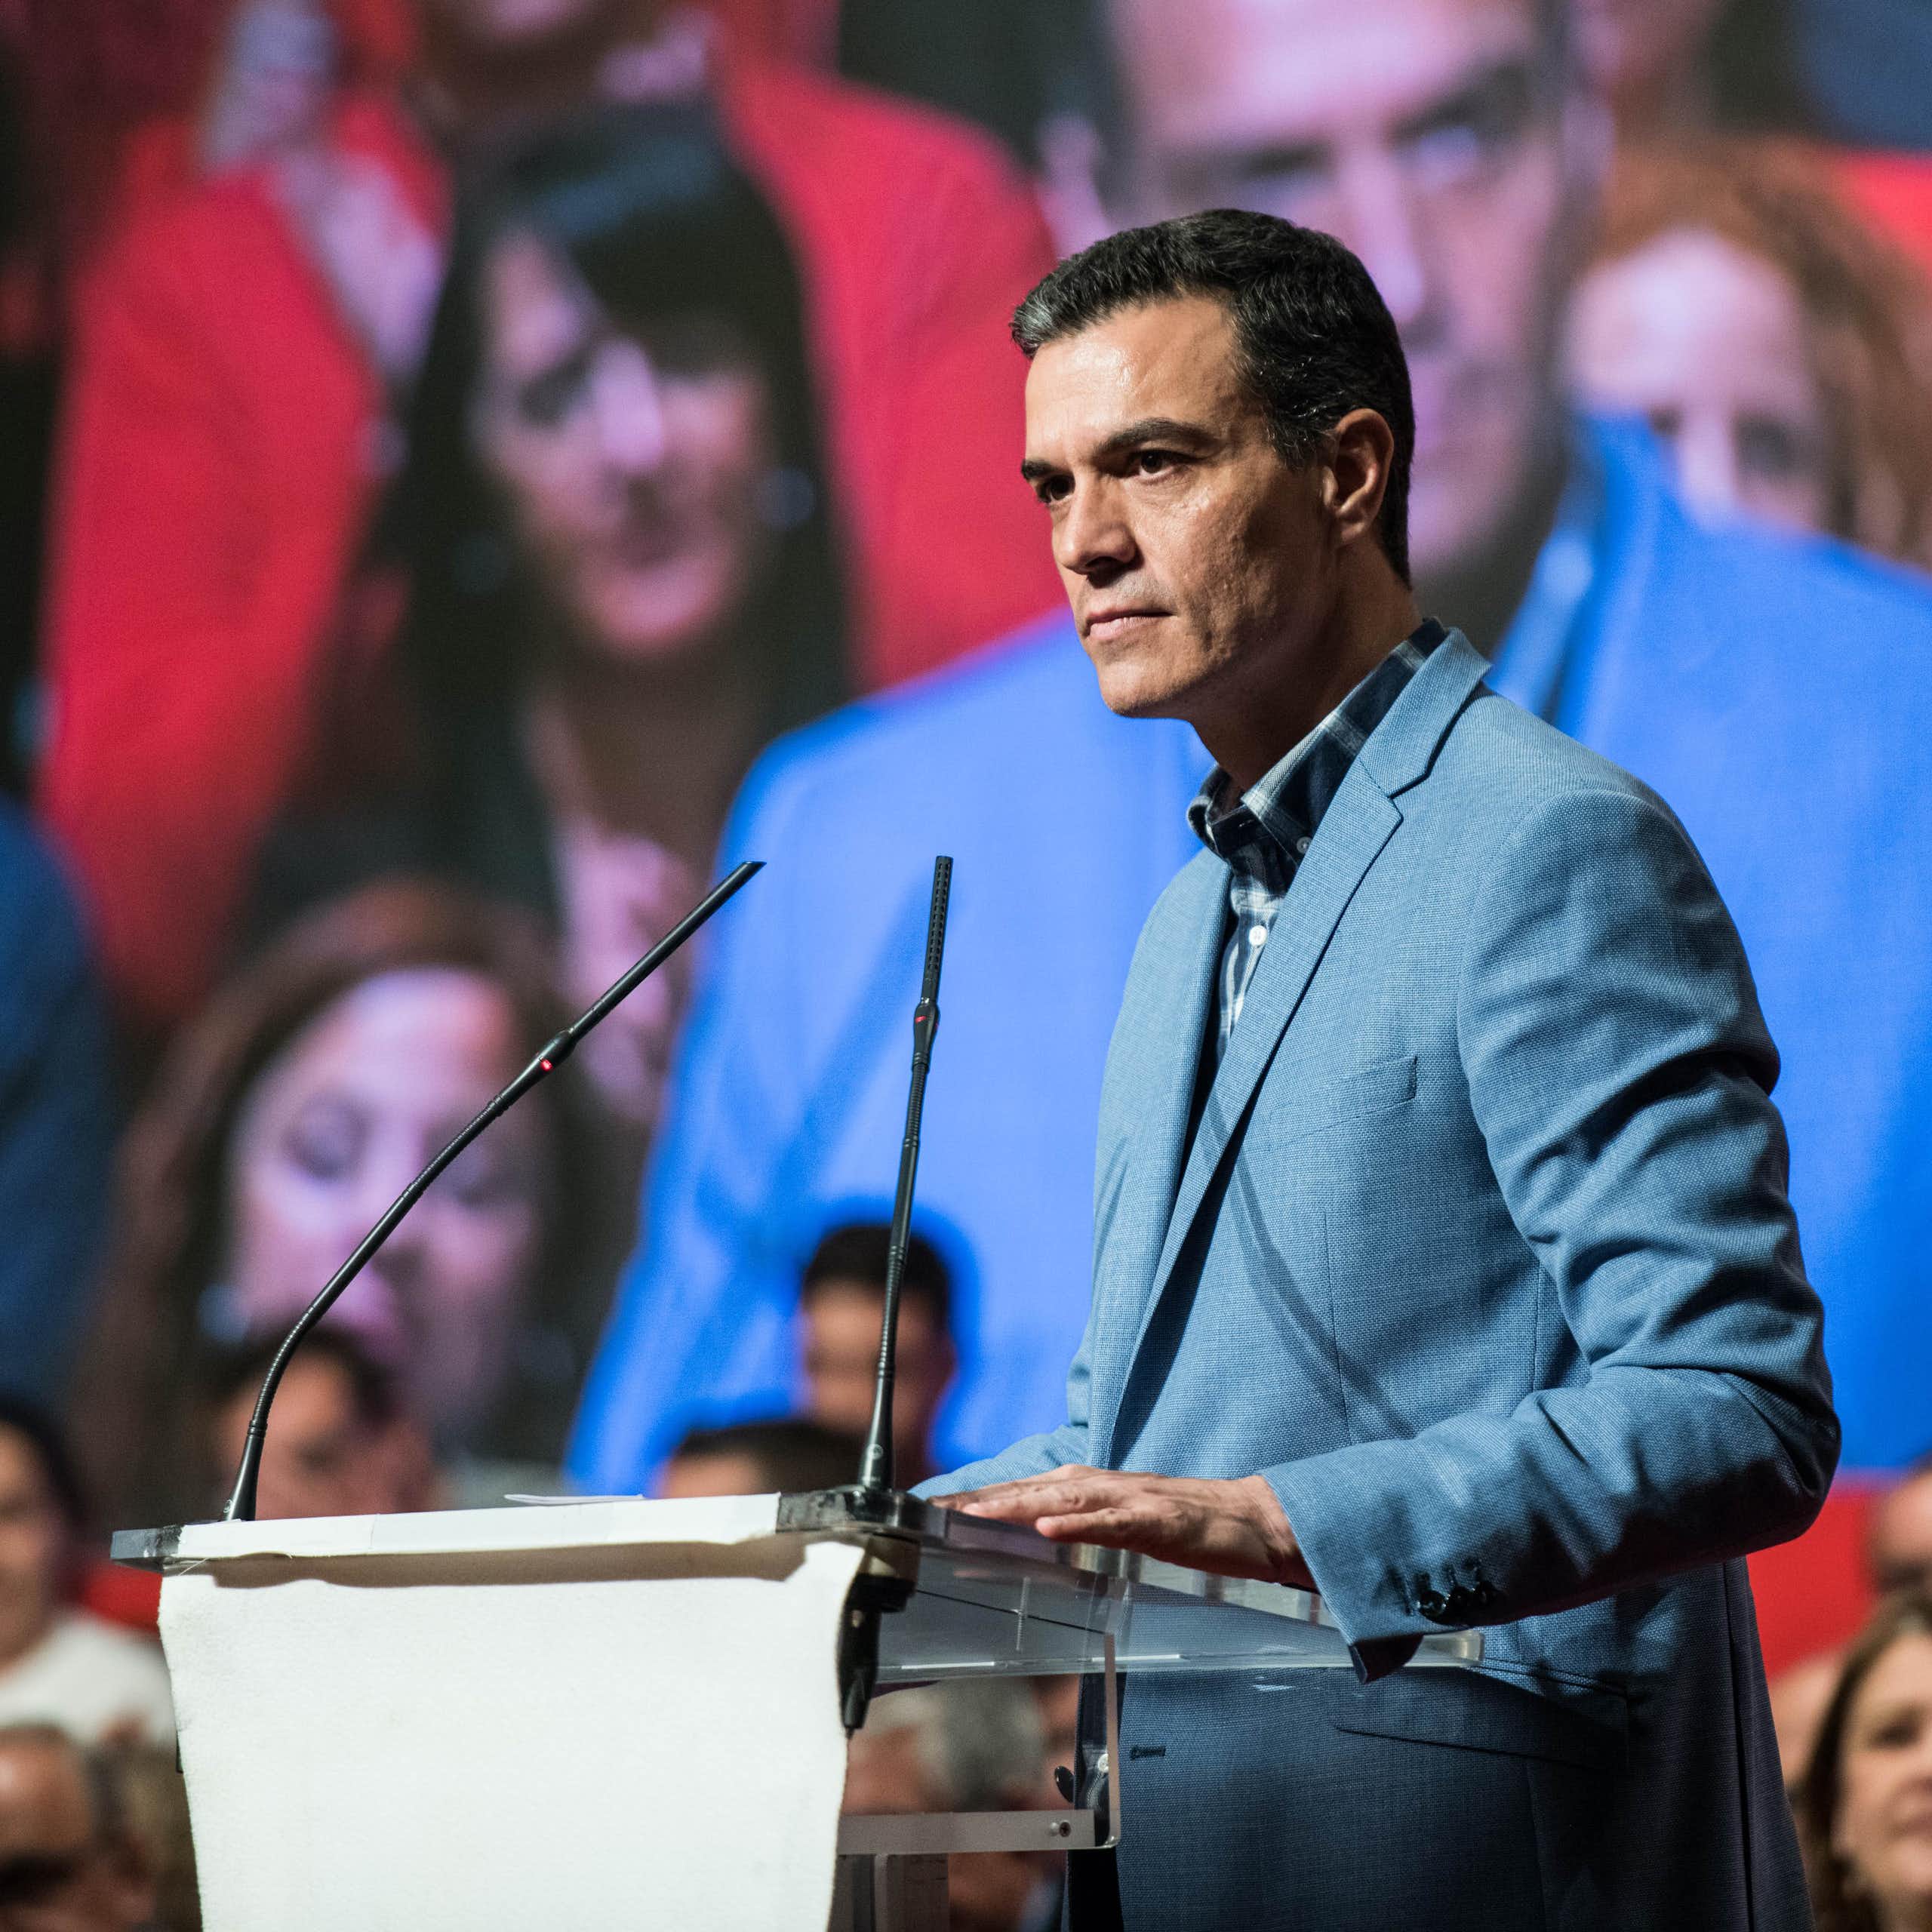 La carta de Pedro Sánchez analizada desde la comunicación política